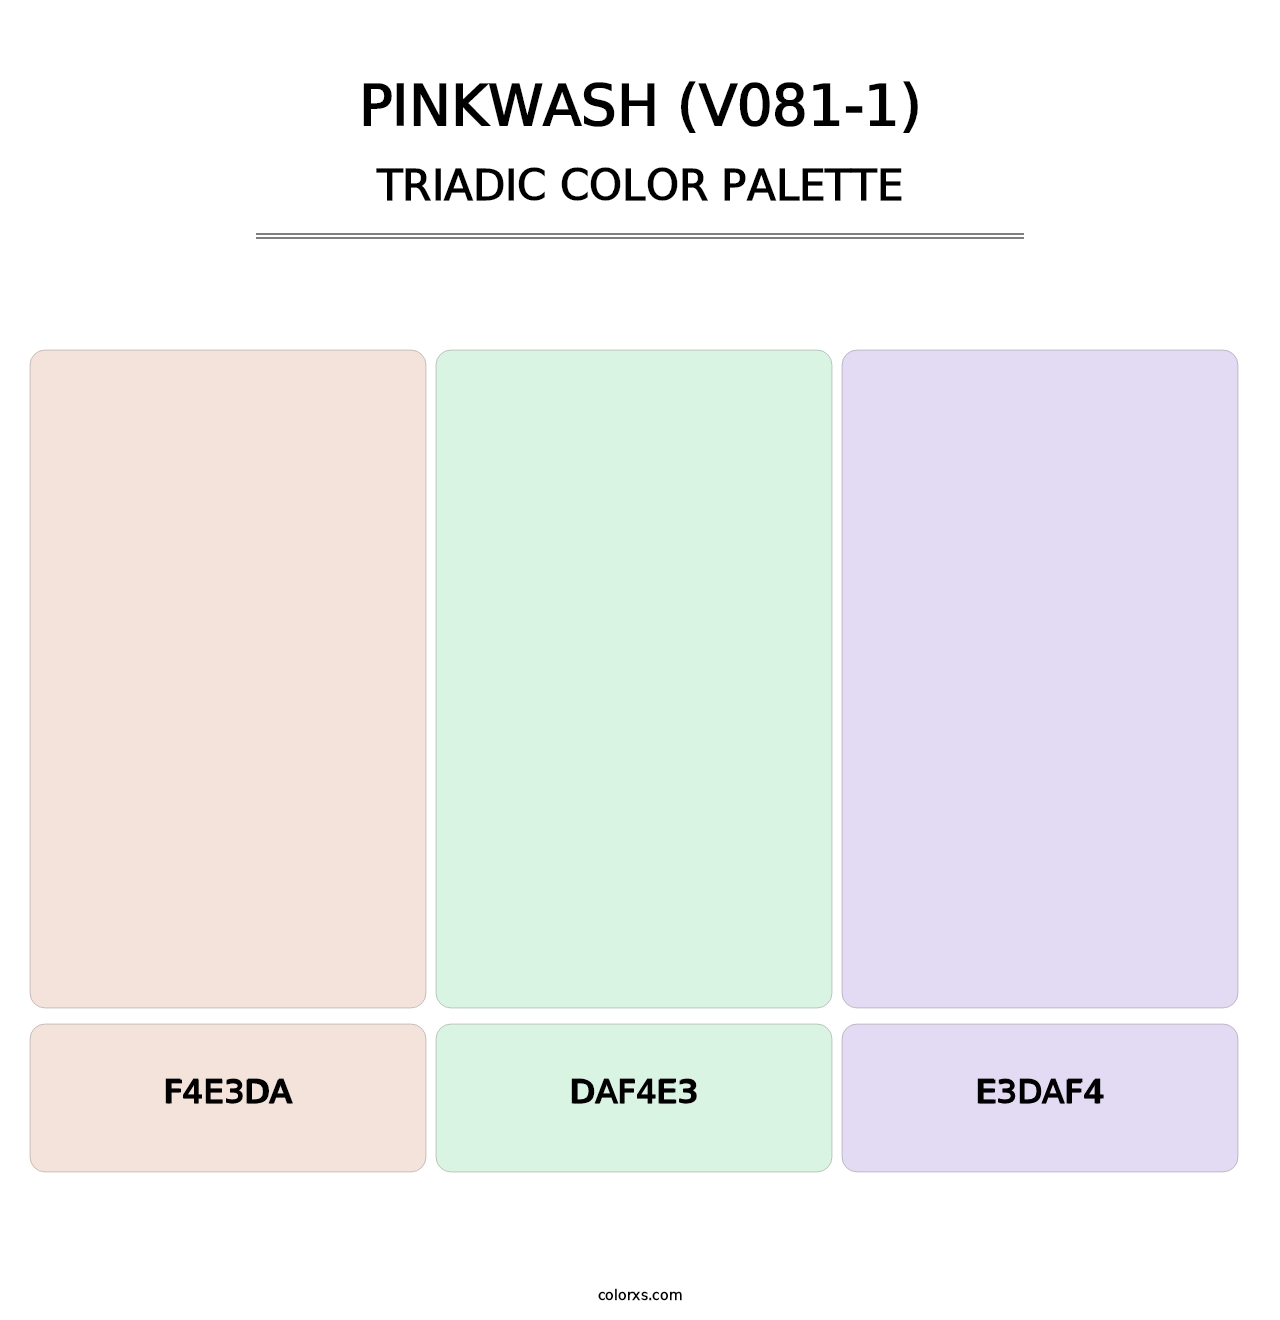 Pinkwash (V081-1) - Triadic Color Palette